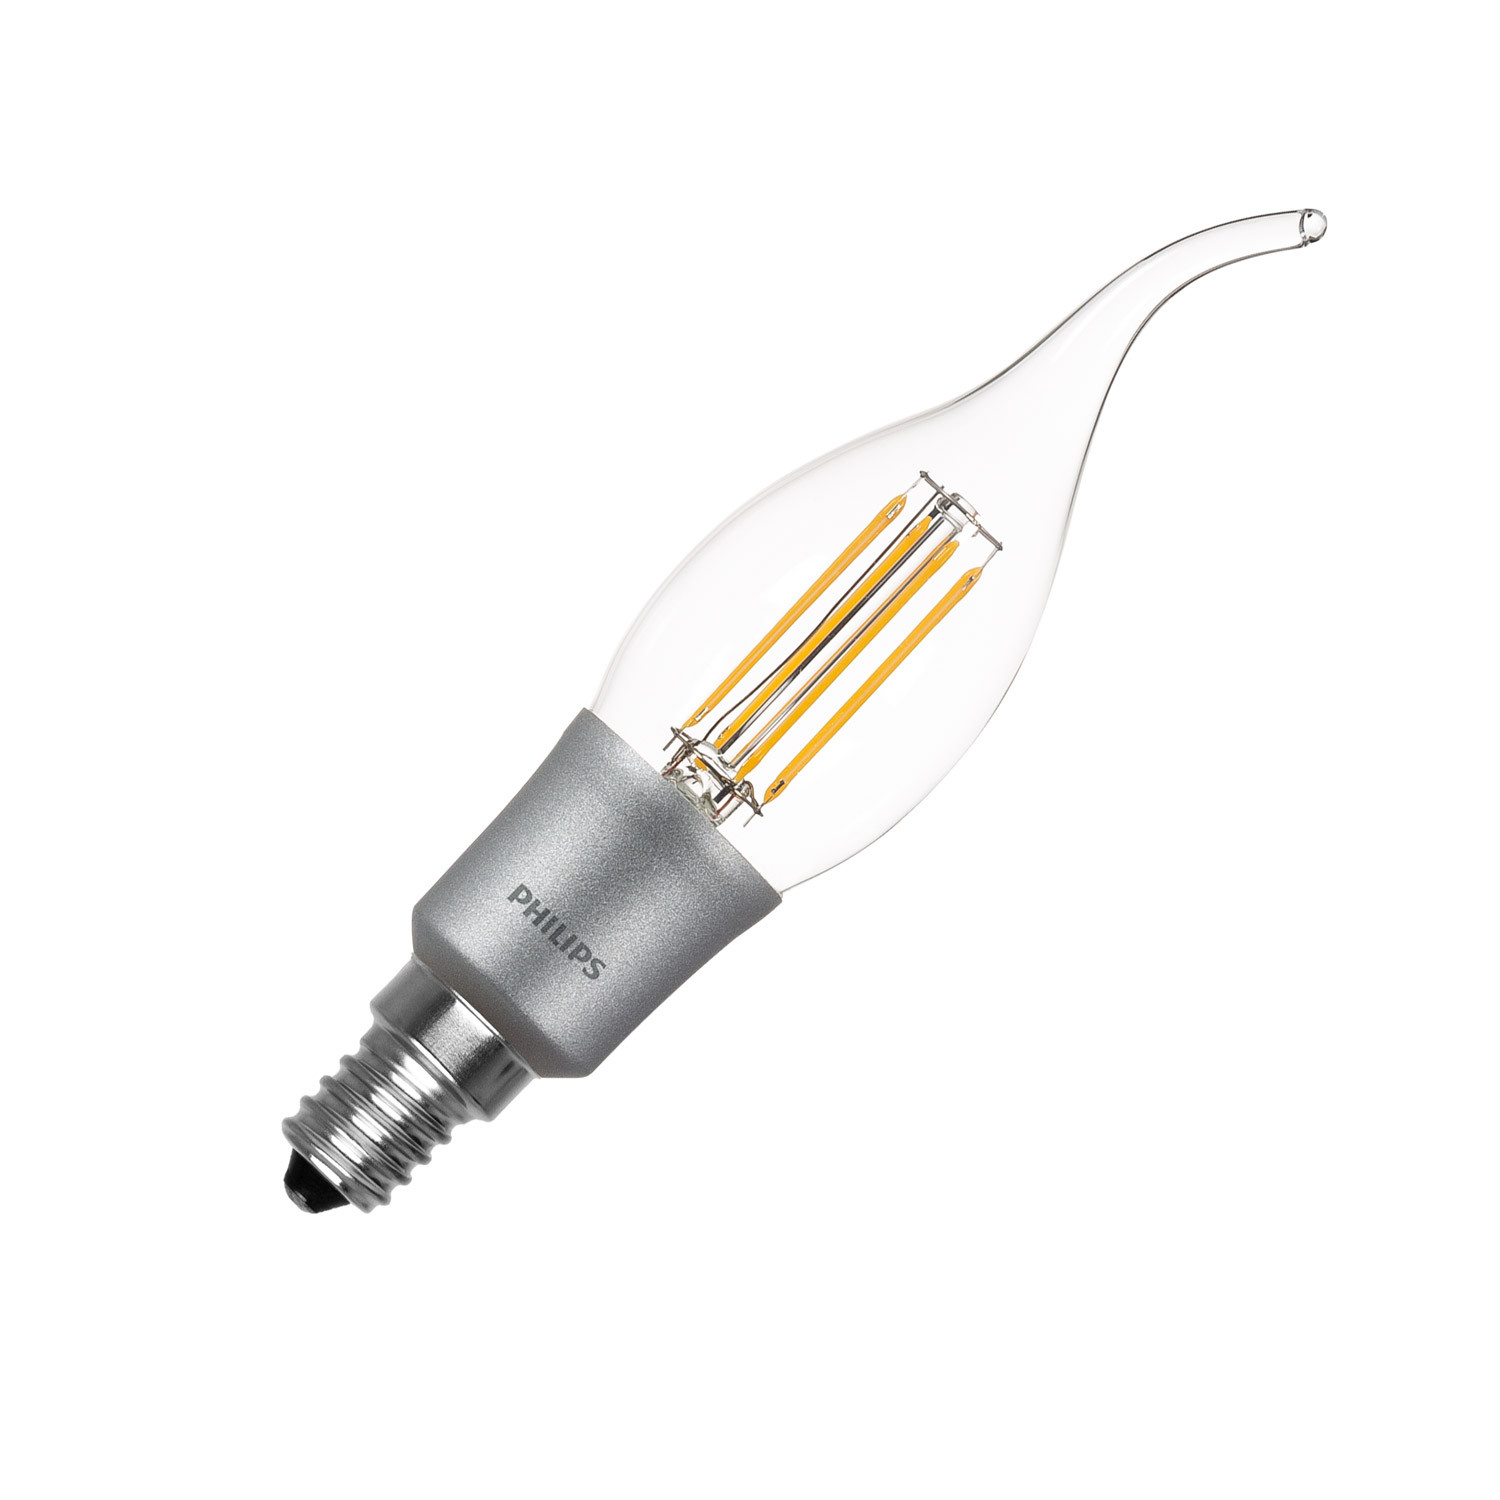 Ampoule LED Edison à filament 5W E14 flamme pour lustre type C35